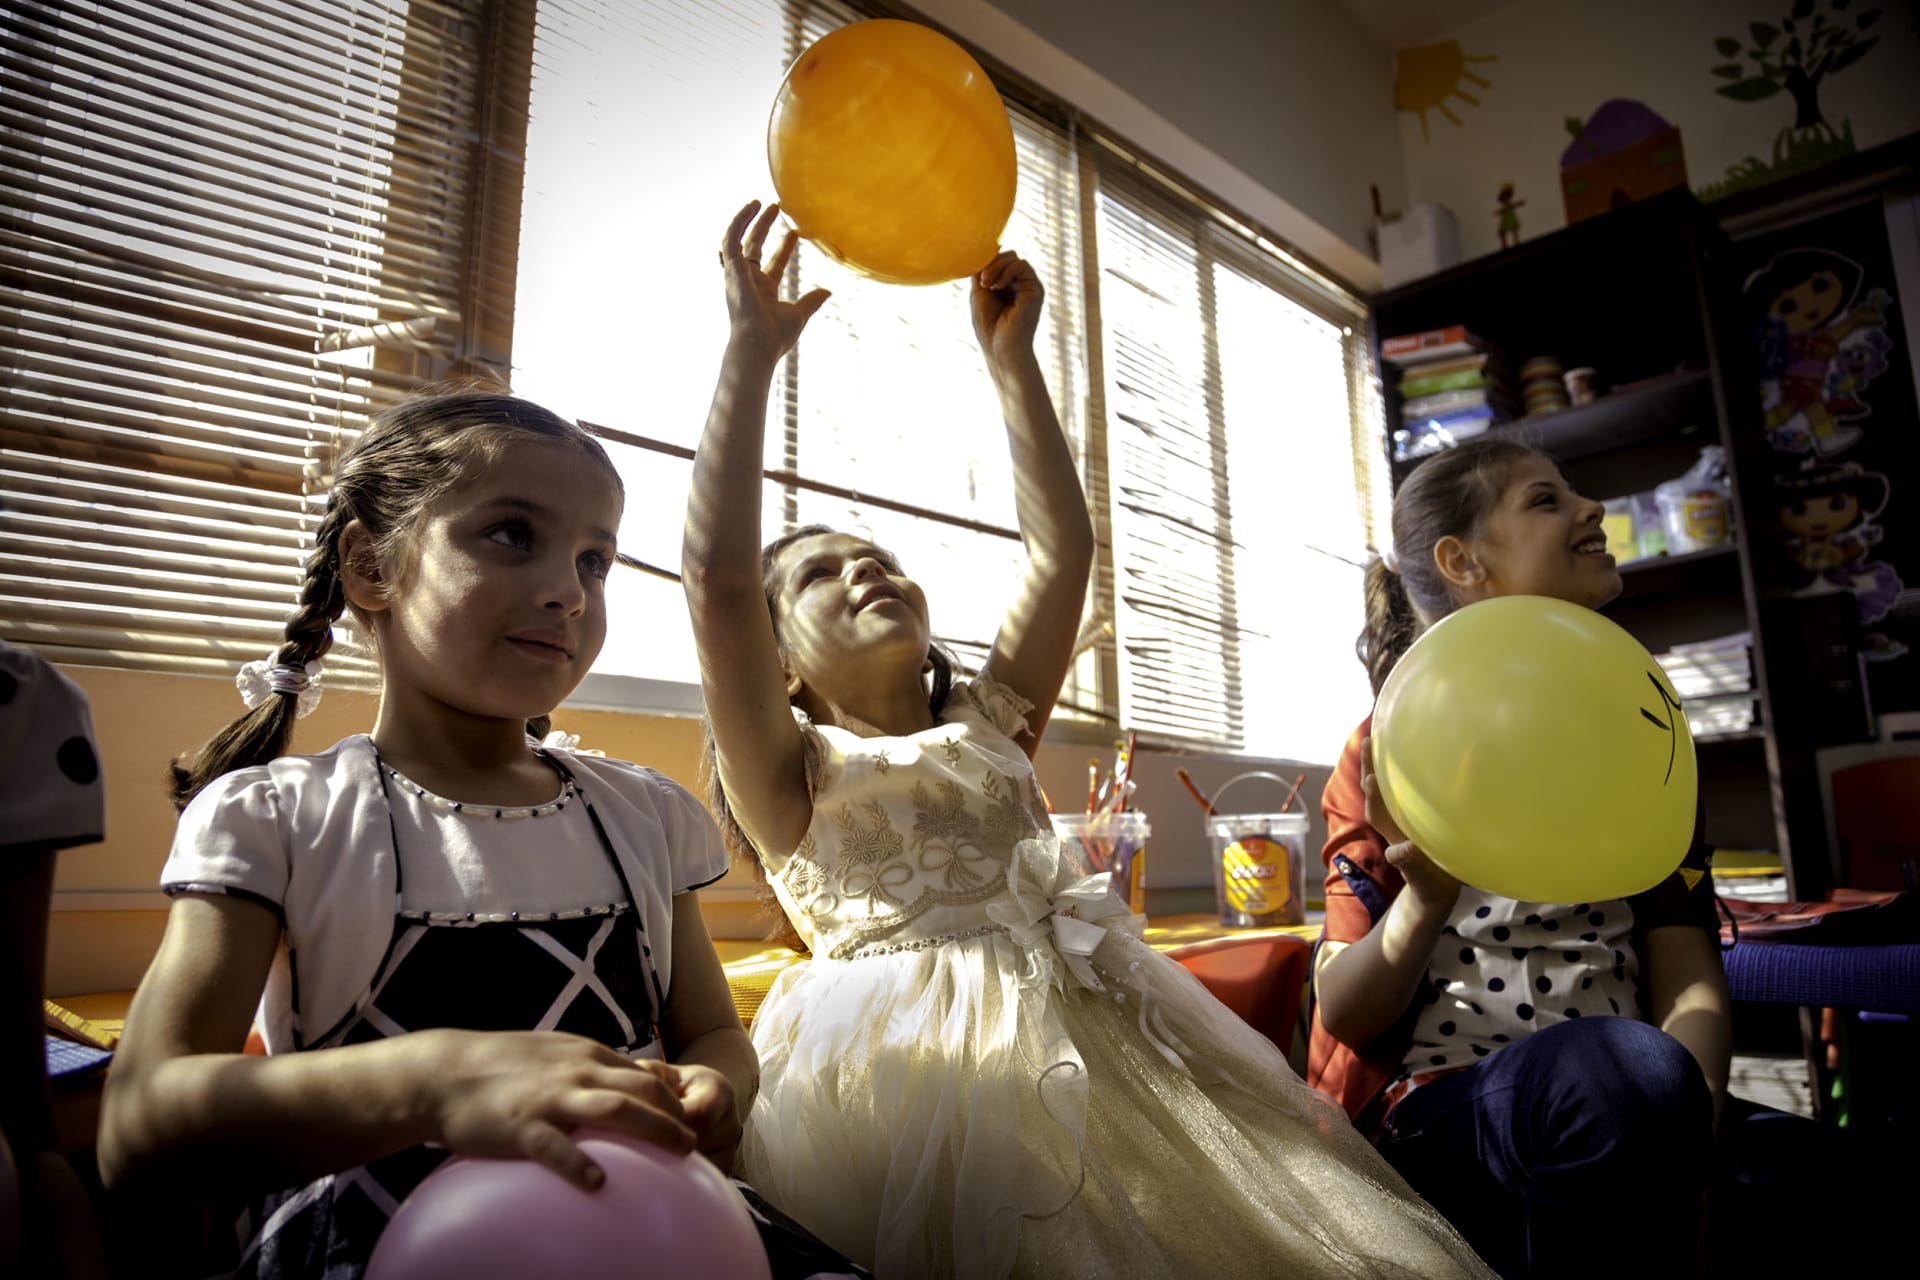 من الأردن إلى كوبا..مصورة تلقي نظرة جادة على لعب الأطفال حول العالم..ماذا وجدت؟